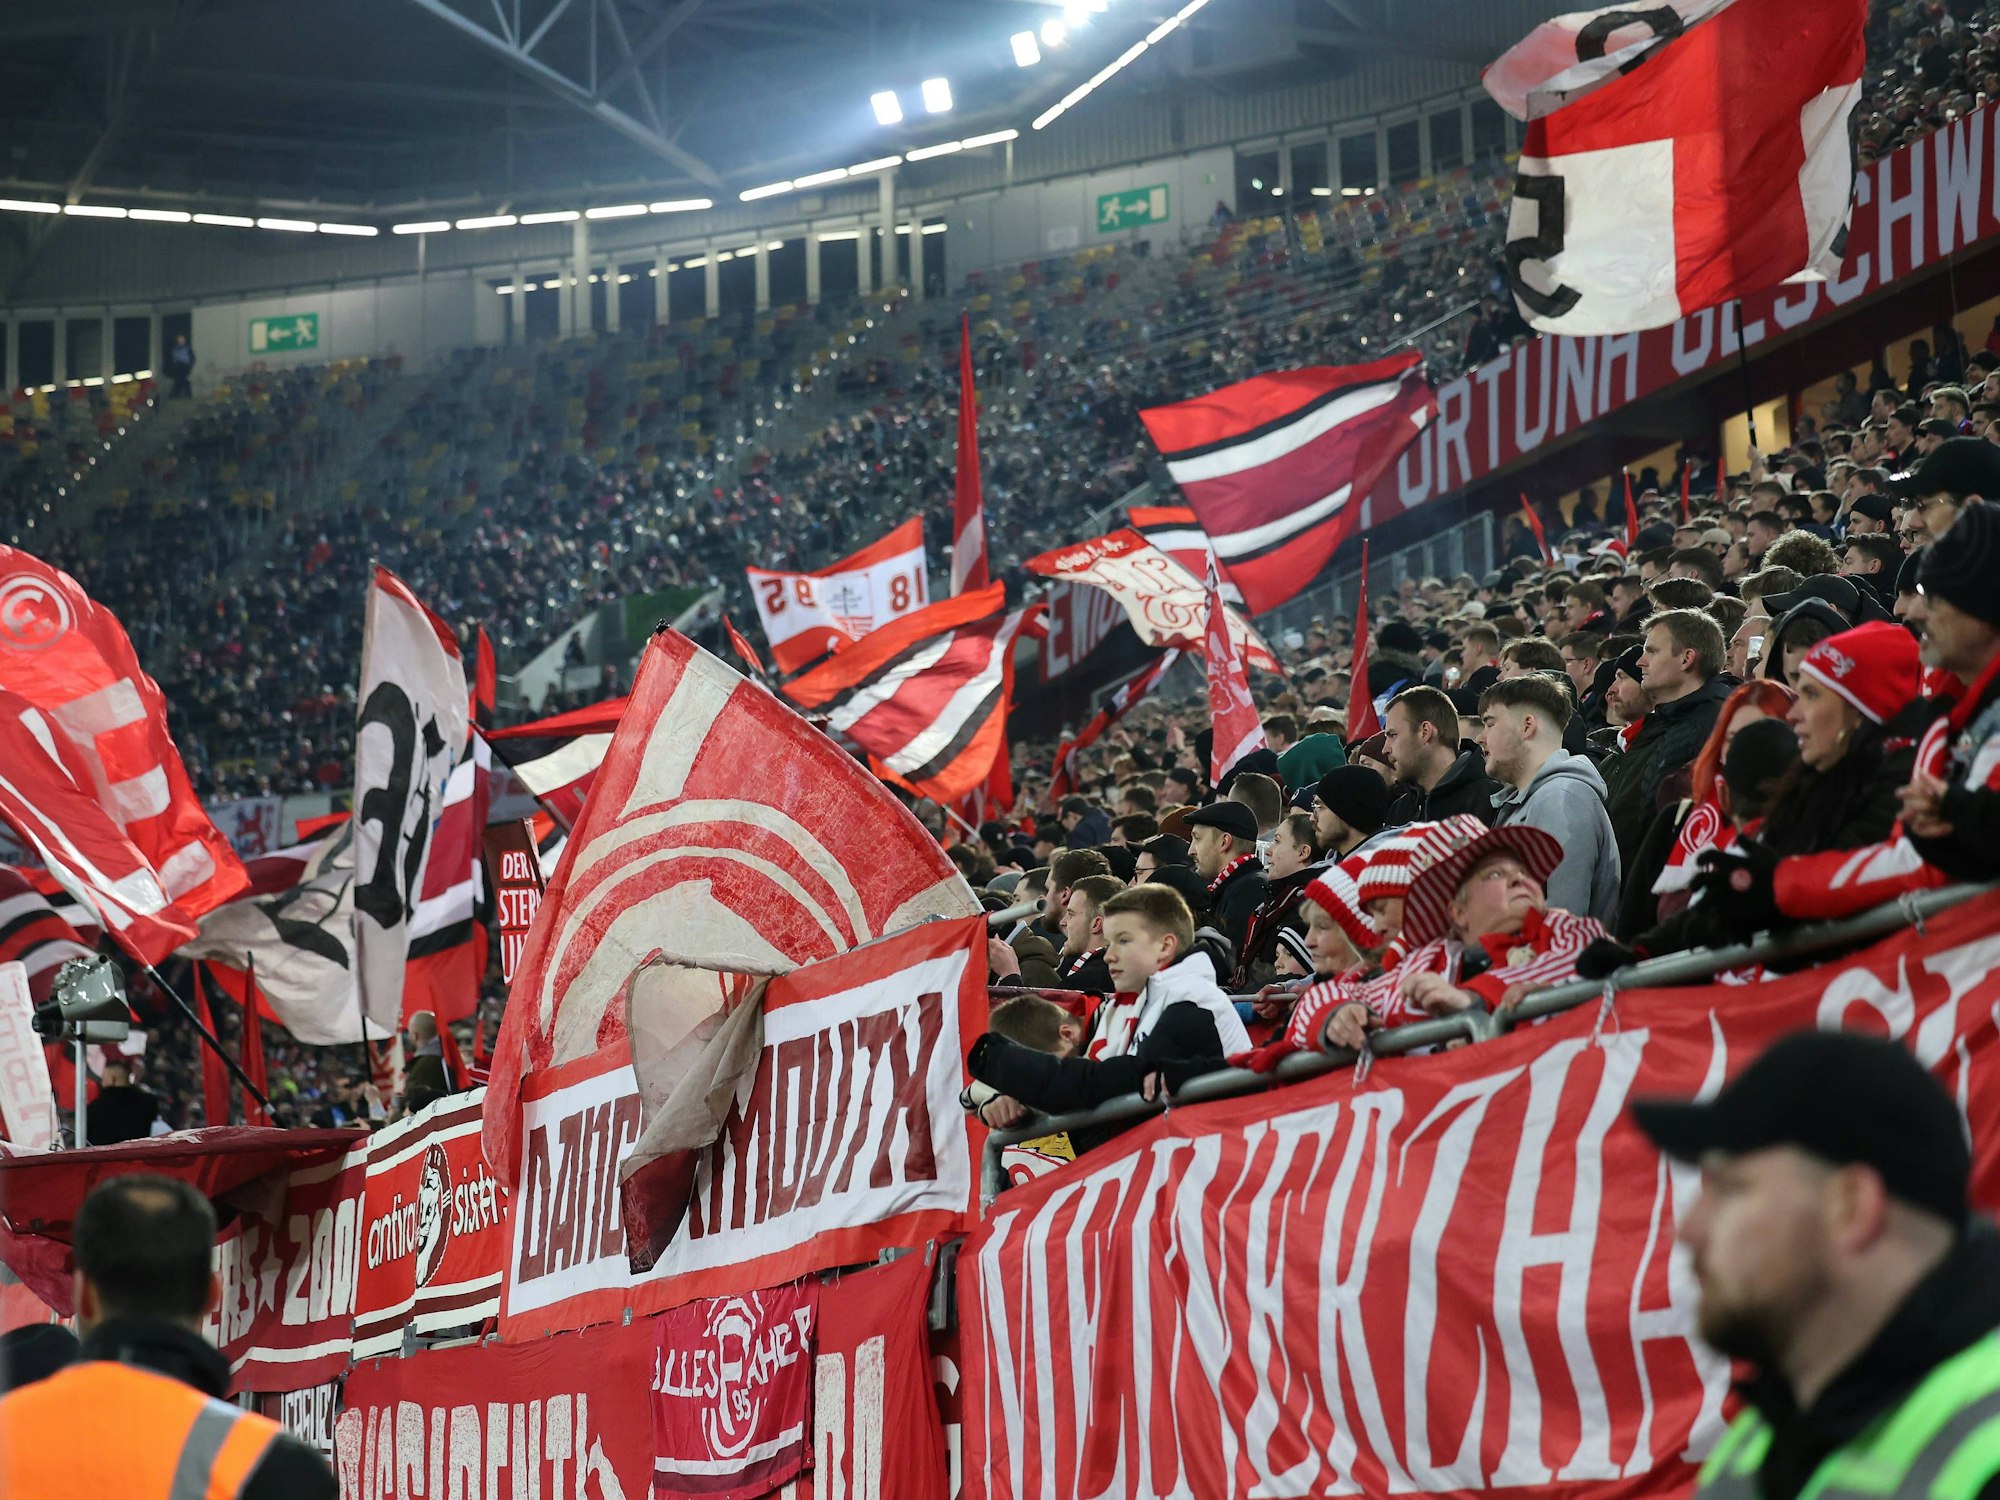 Blick in die Fankurve von Fortuna Düsseldorf beim Heimspiel gegen den 1. FC Magdeburg.